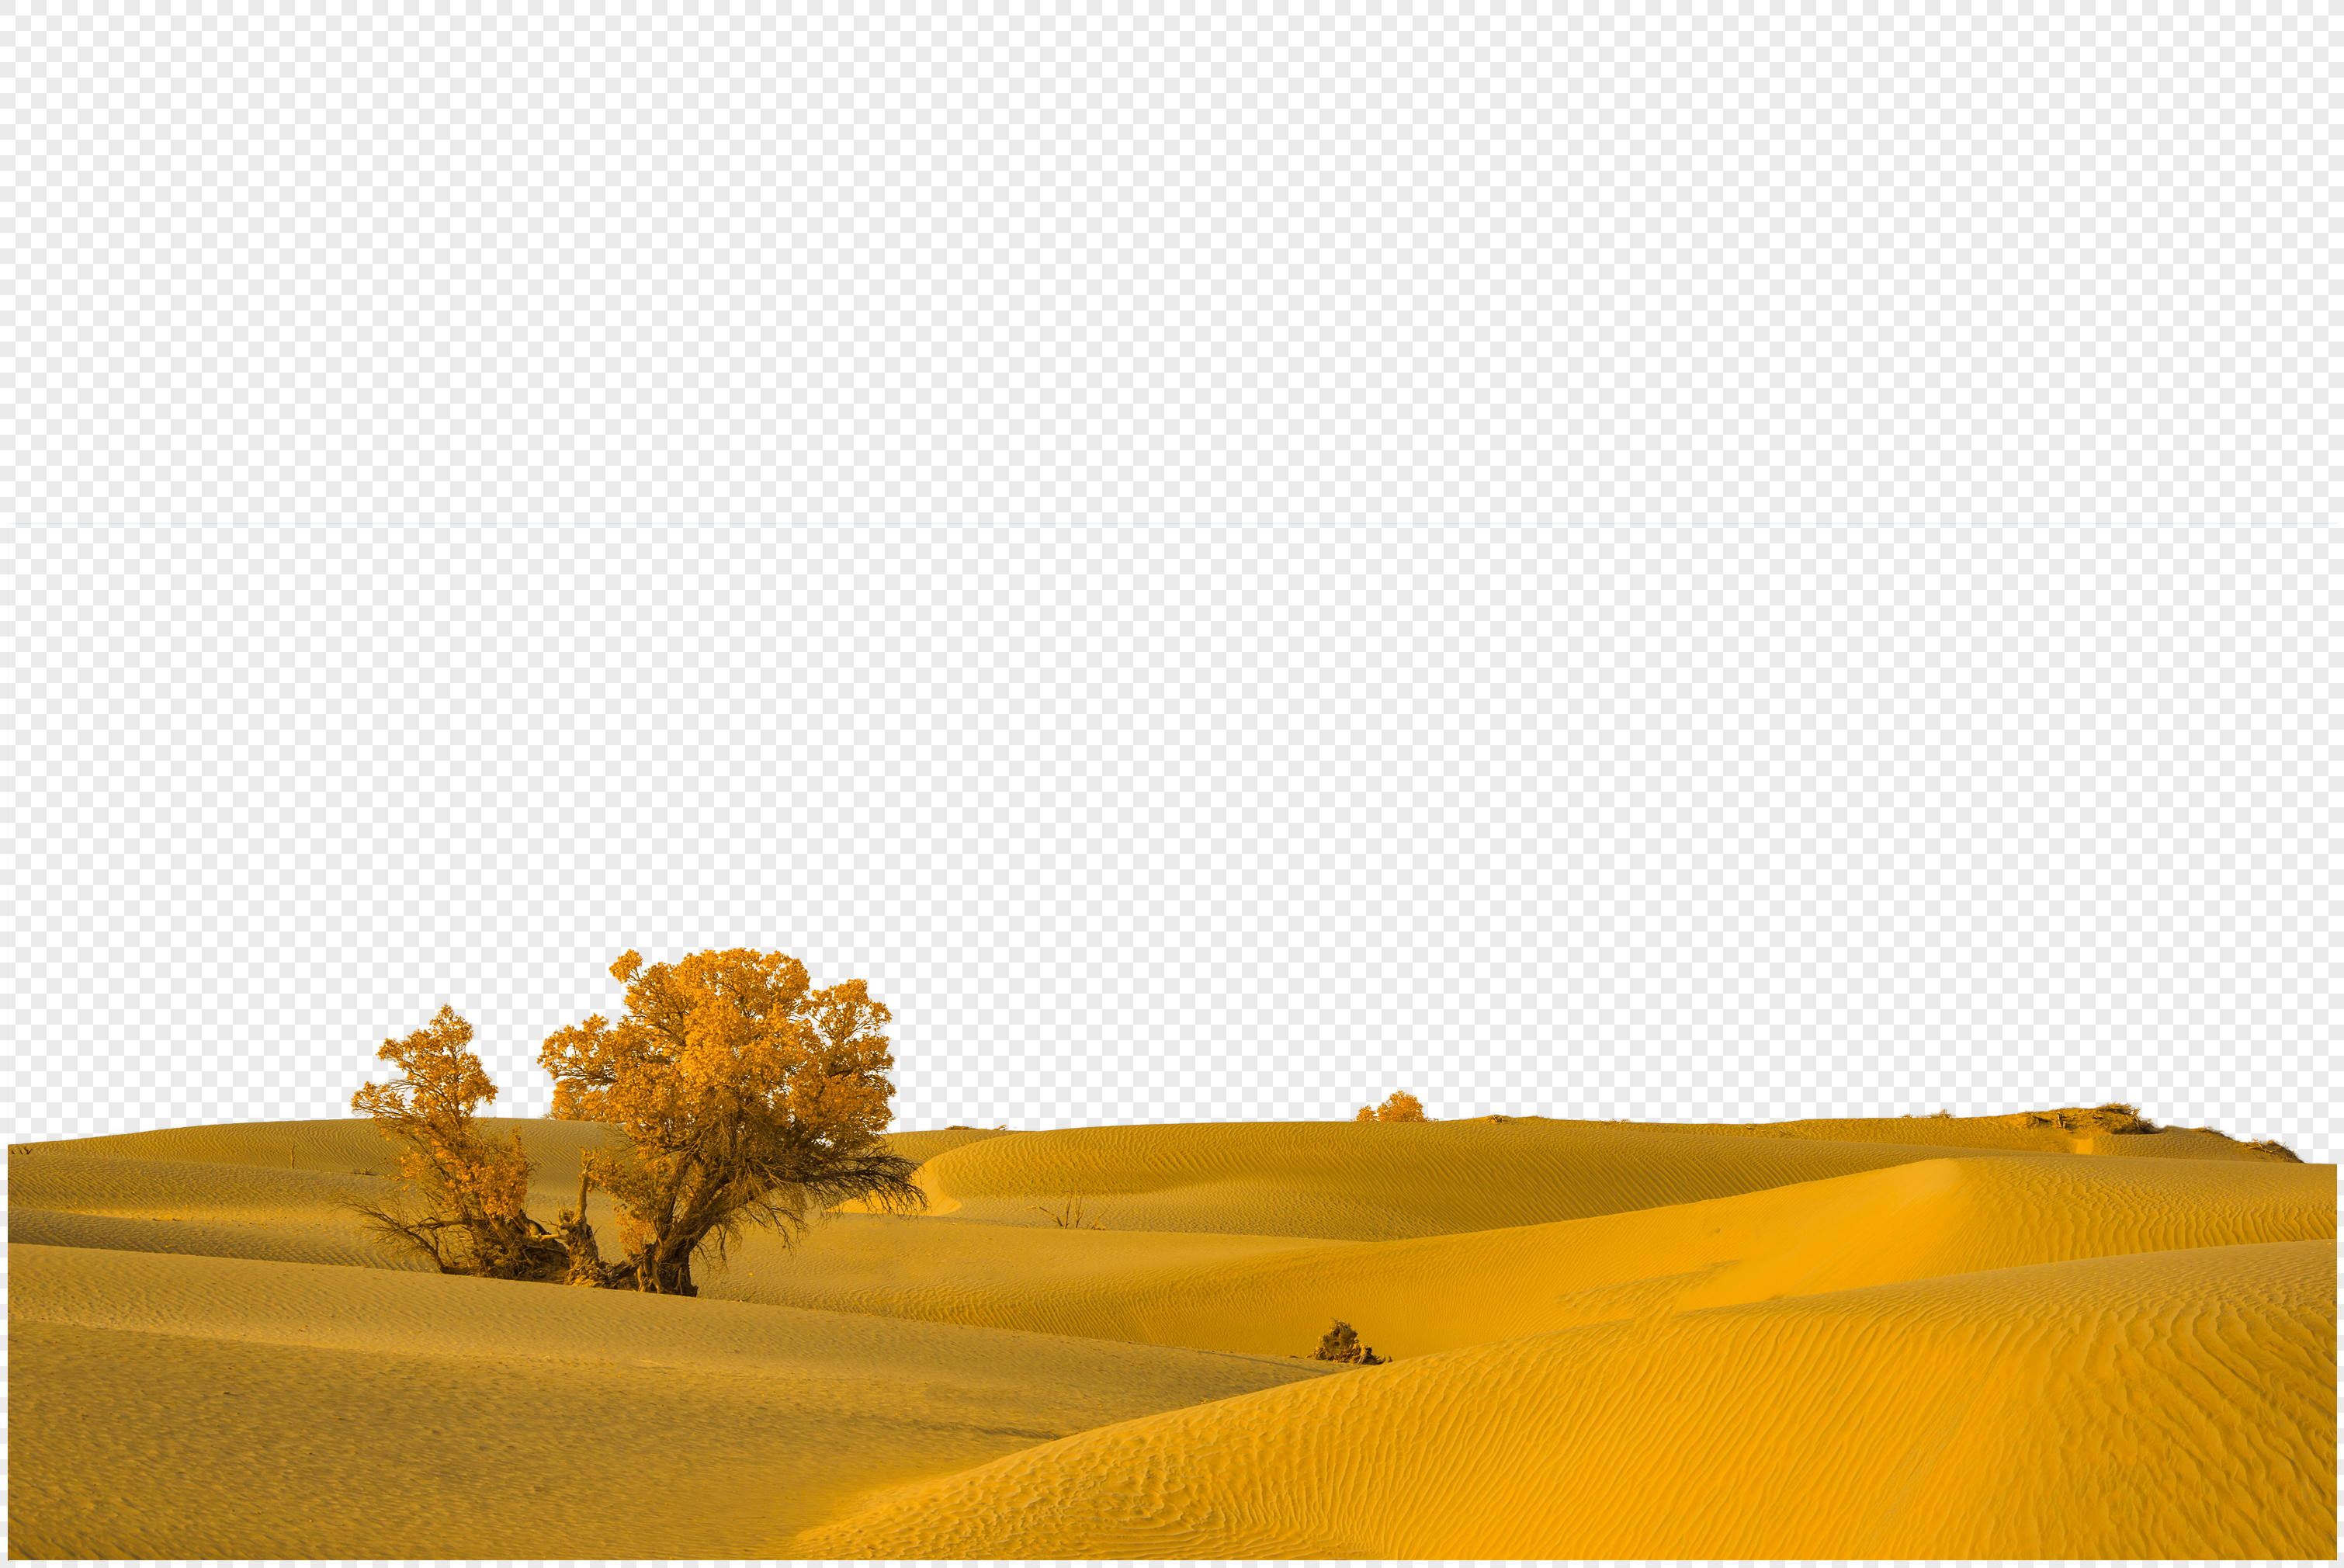 дерево в пустыне изображение, дерево в пустыне фото_Фоновое  изображение_ru.lovepik.com Бесплатная картинка